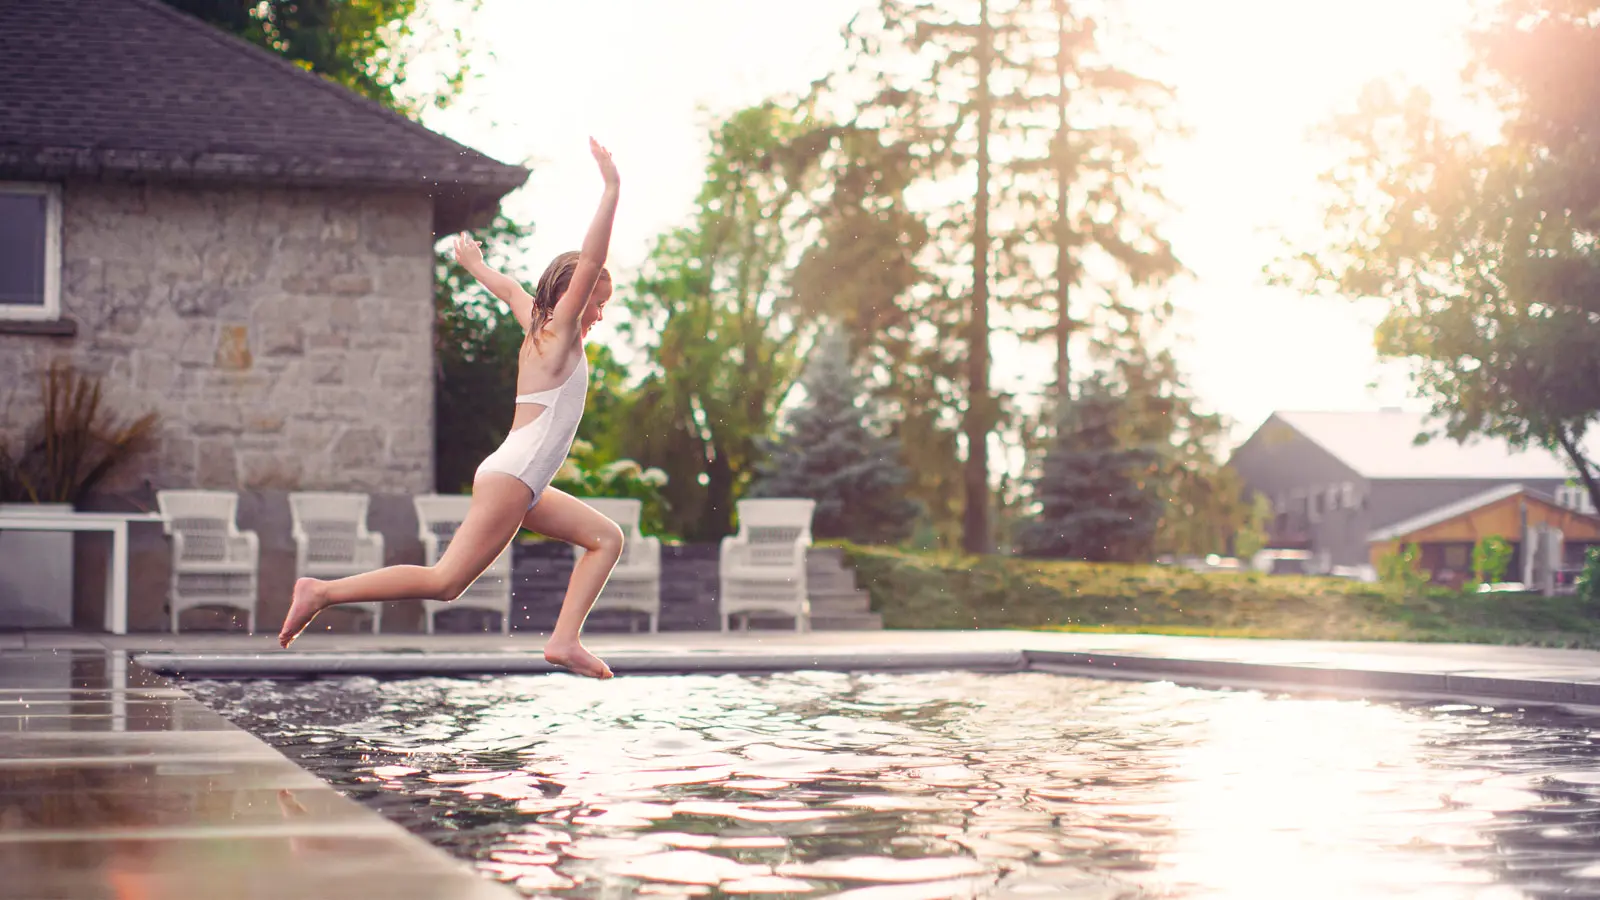 Ein junges Mädchen springt in einen von Leisure Pools hergestellten Glasfaser-Einbaupool